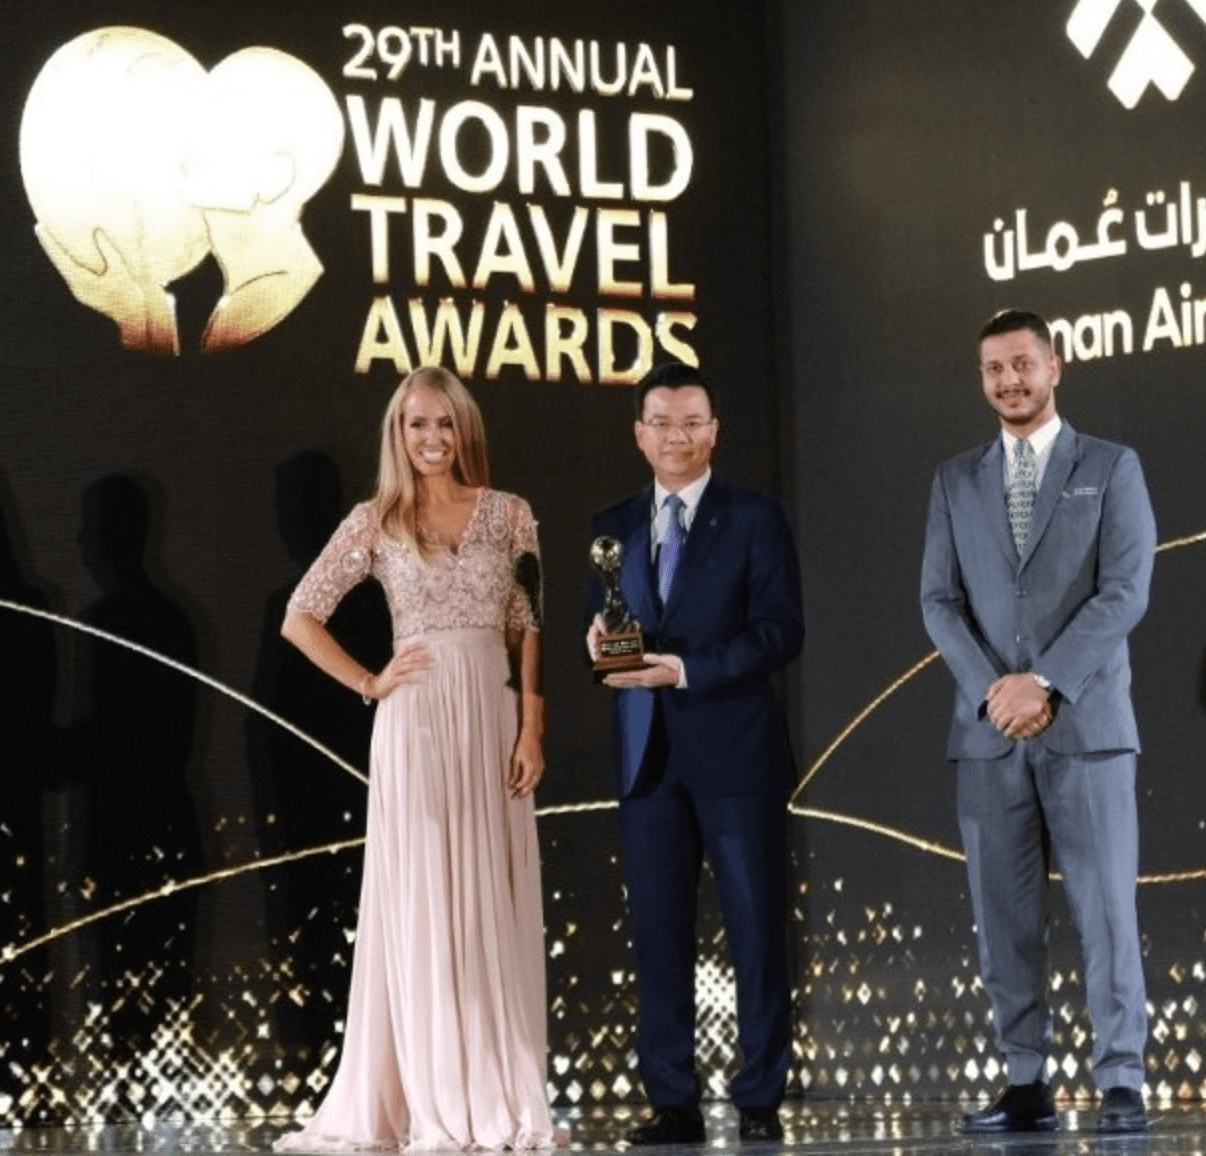 World Travel Awards vinh danh Vietnam Airlines hãng hàng không hàng đầu thế giới về bản sắc văn hóa